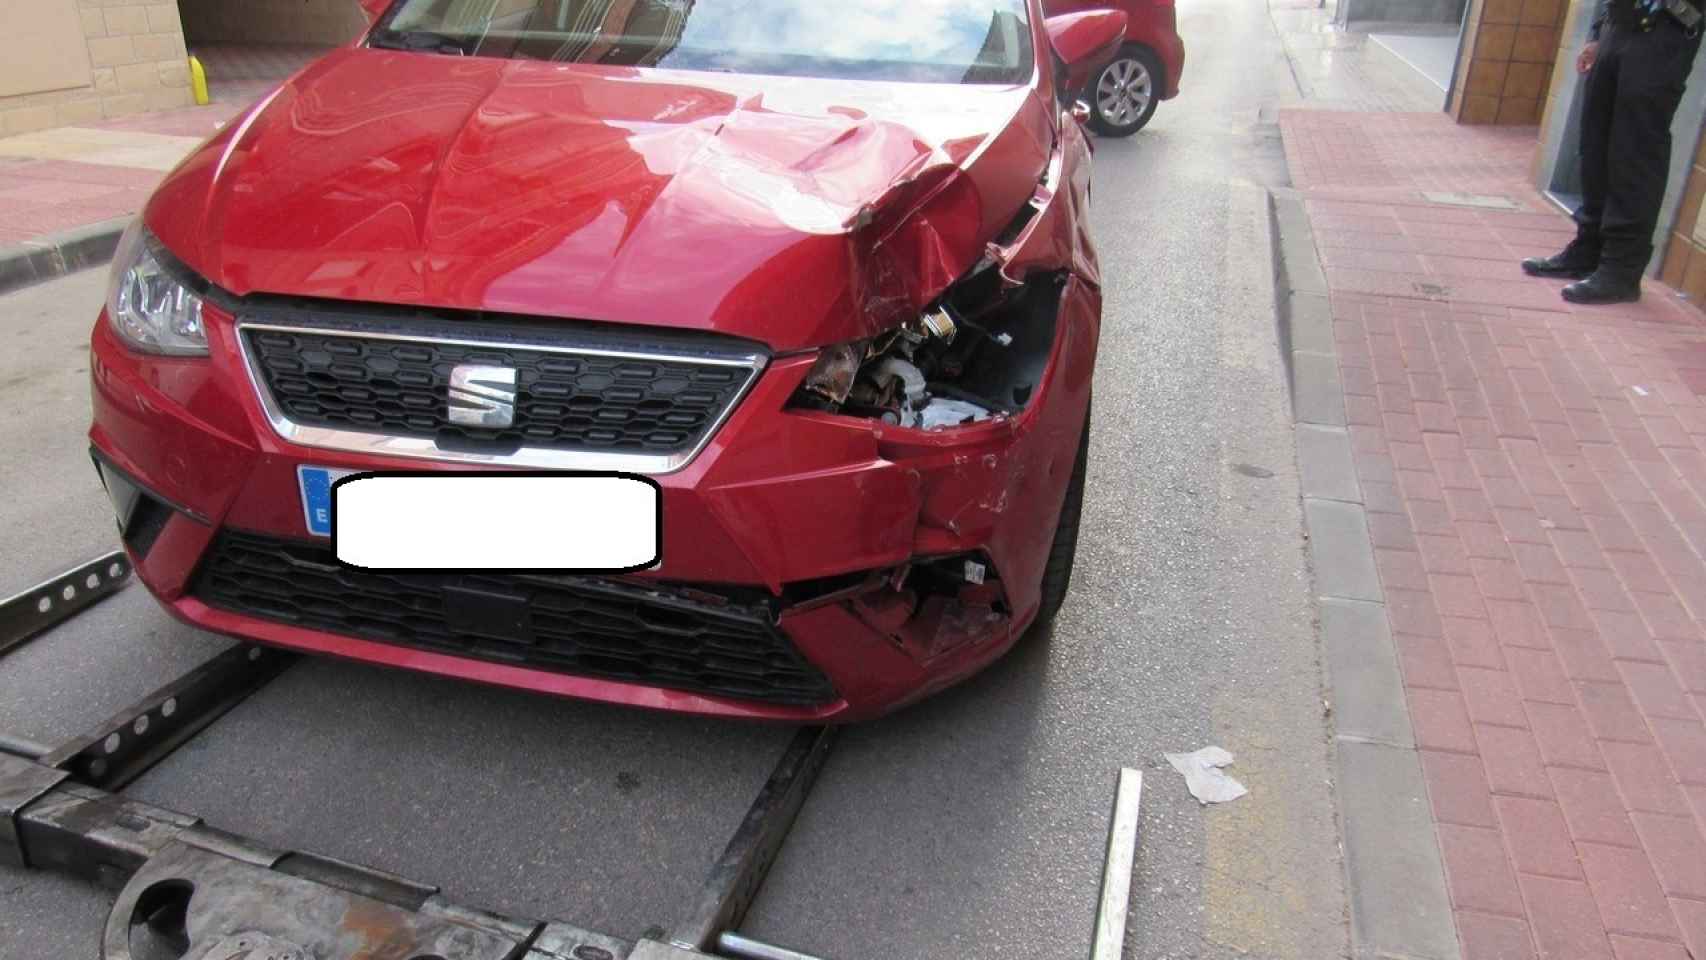 El conductor ocultó el Seat Ibiza en el garaje porque presentaba una violenta colisión.